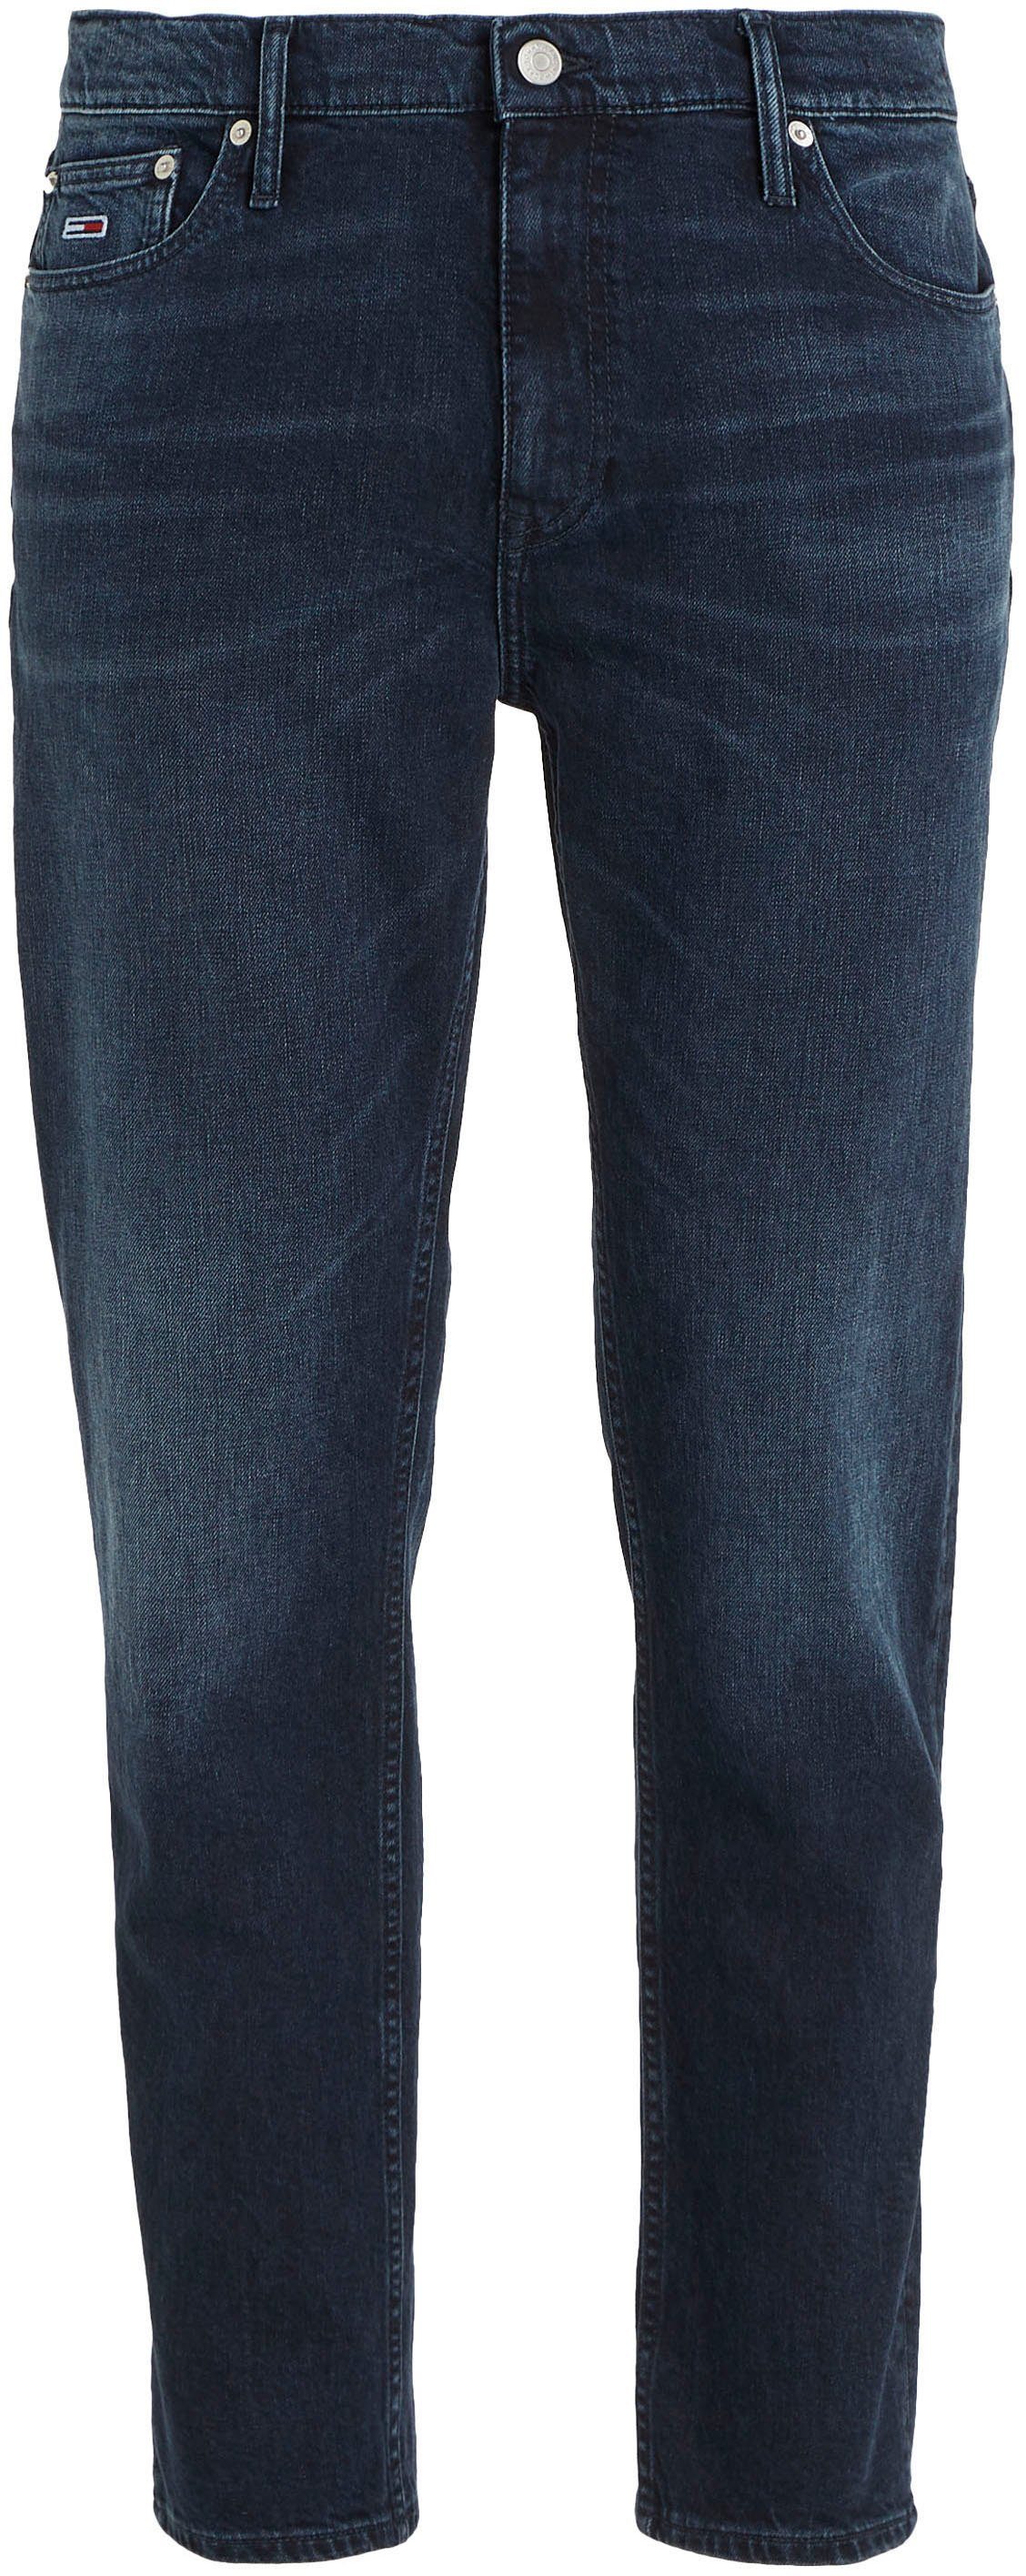 dark blue JEAN TPRD Jeans 5-Pocket-Jeans DAD Tommy RGLR